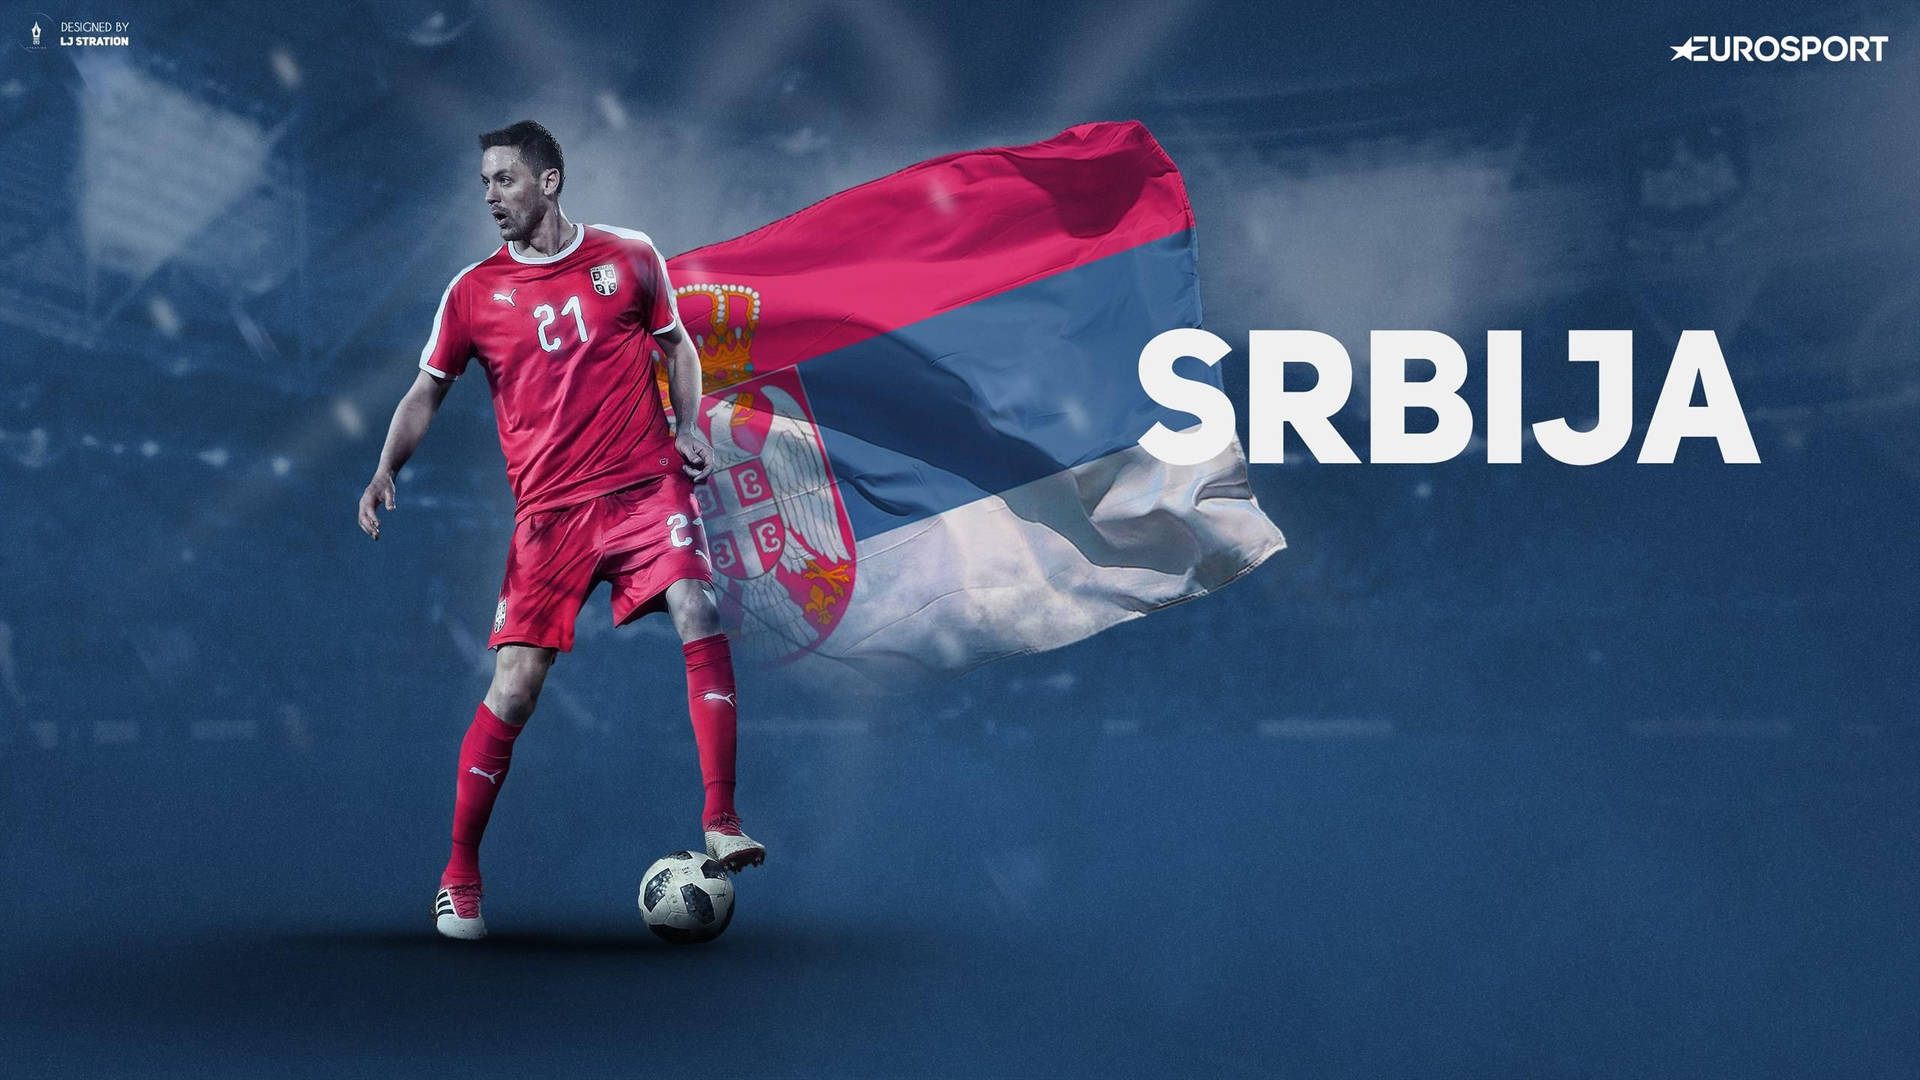 Serbisk national fodboldhold 2018 World Cup Wallpaper